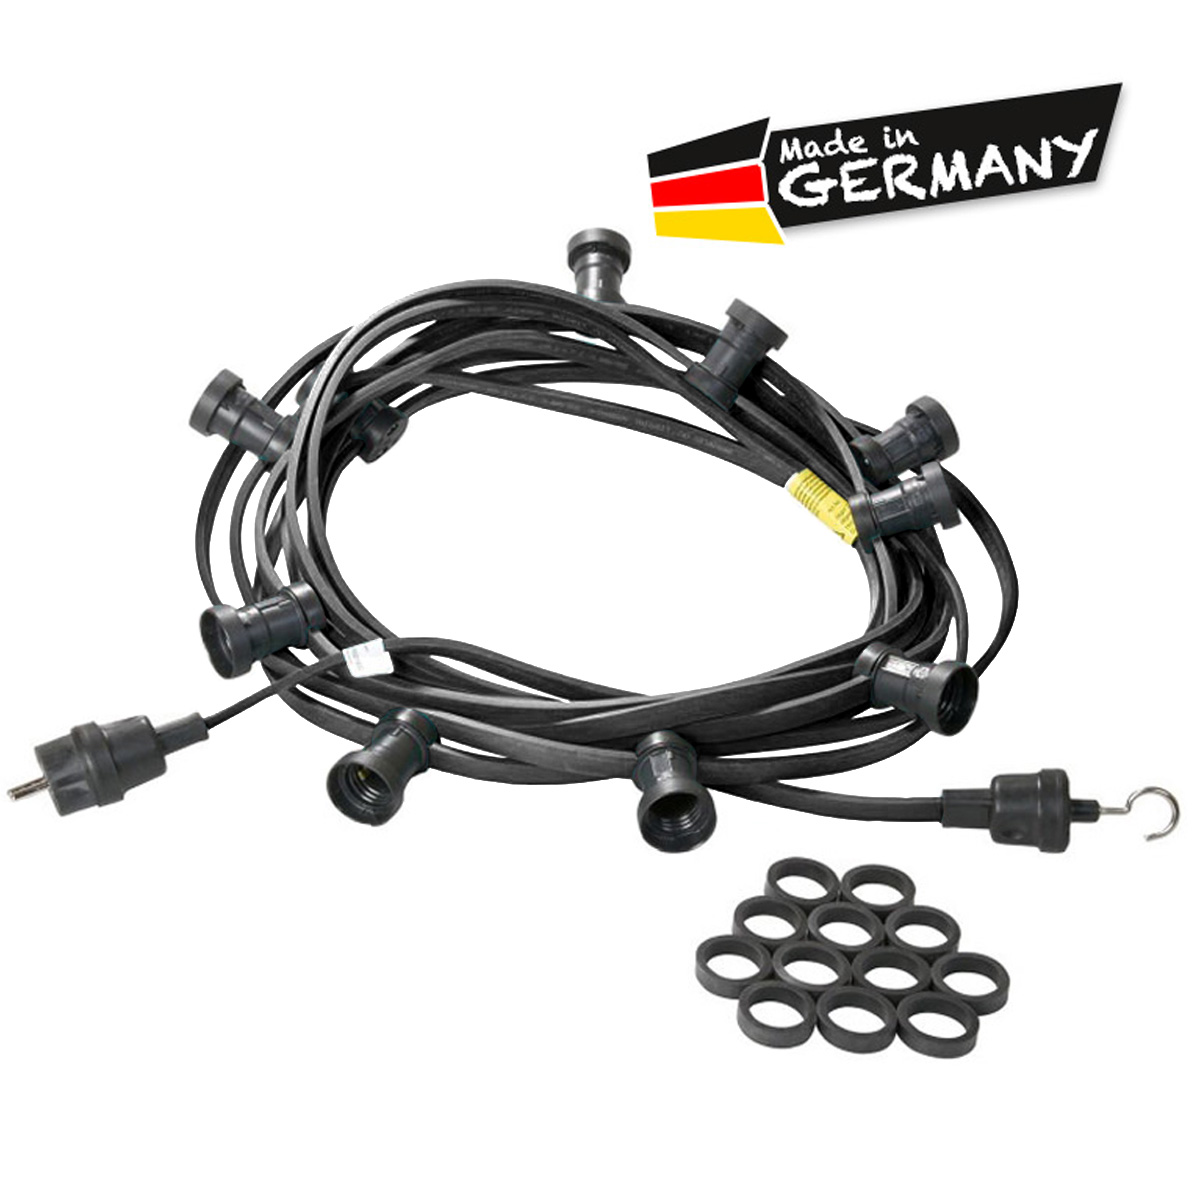 Illu-/Partylichterkette schwarz 10m | Außenlichterkette | Made in Germany | 10 x E27 Schraubfassung